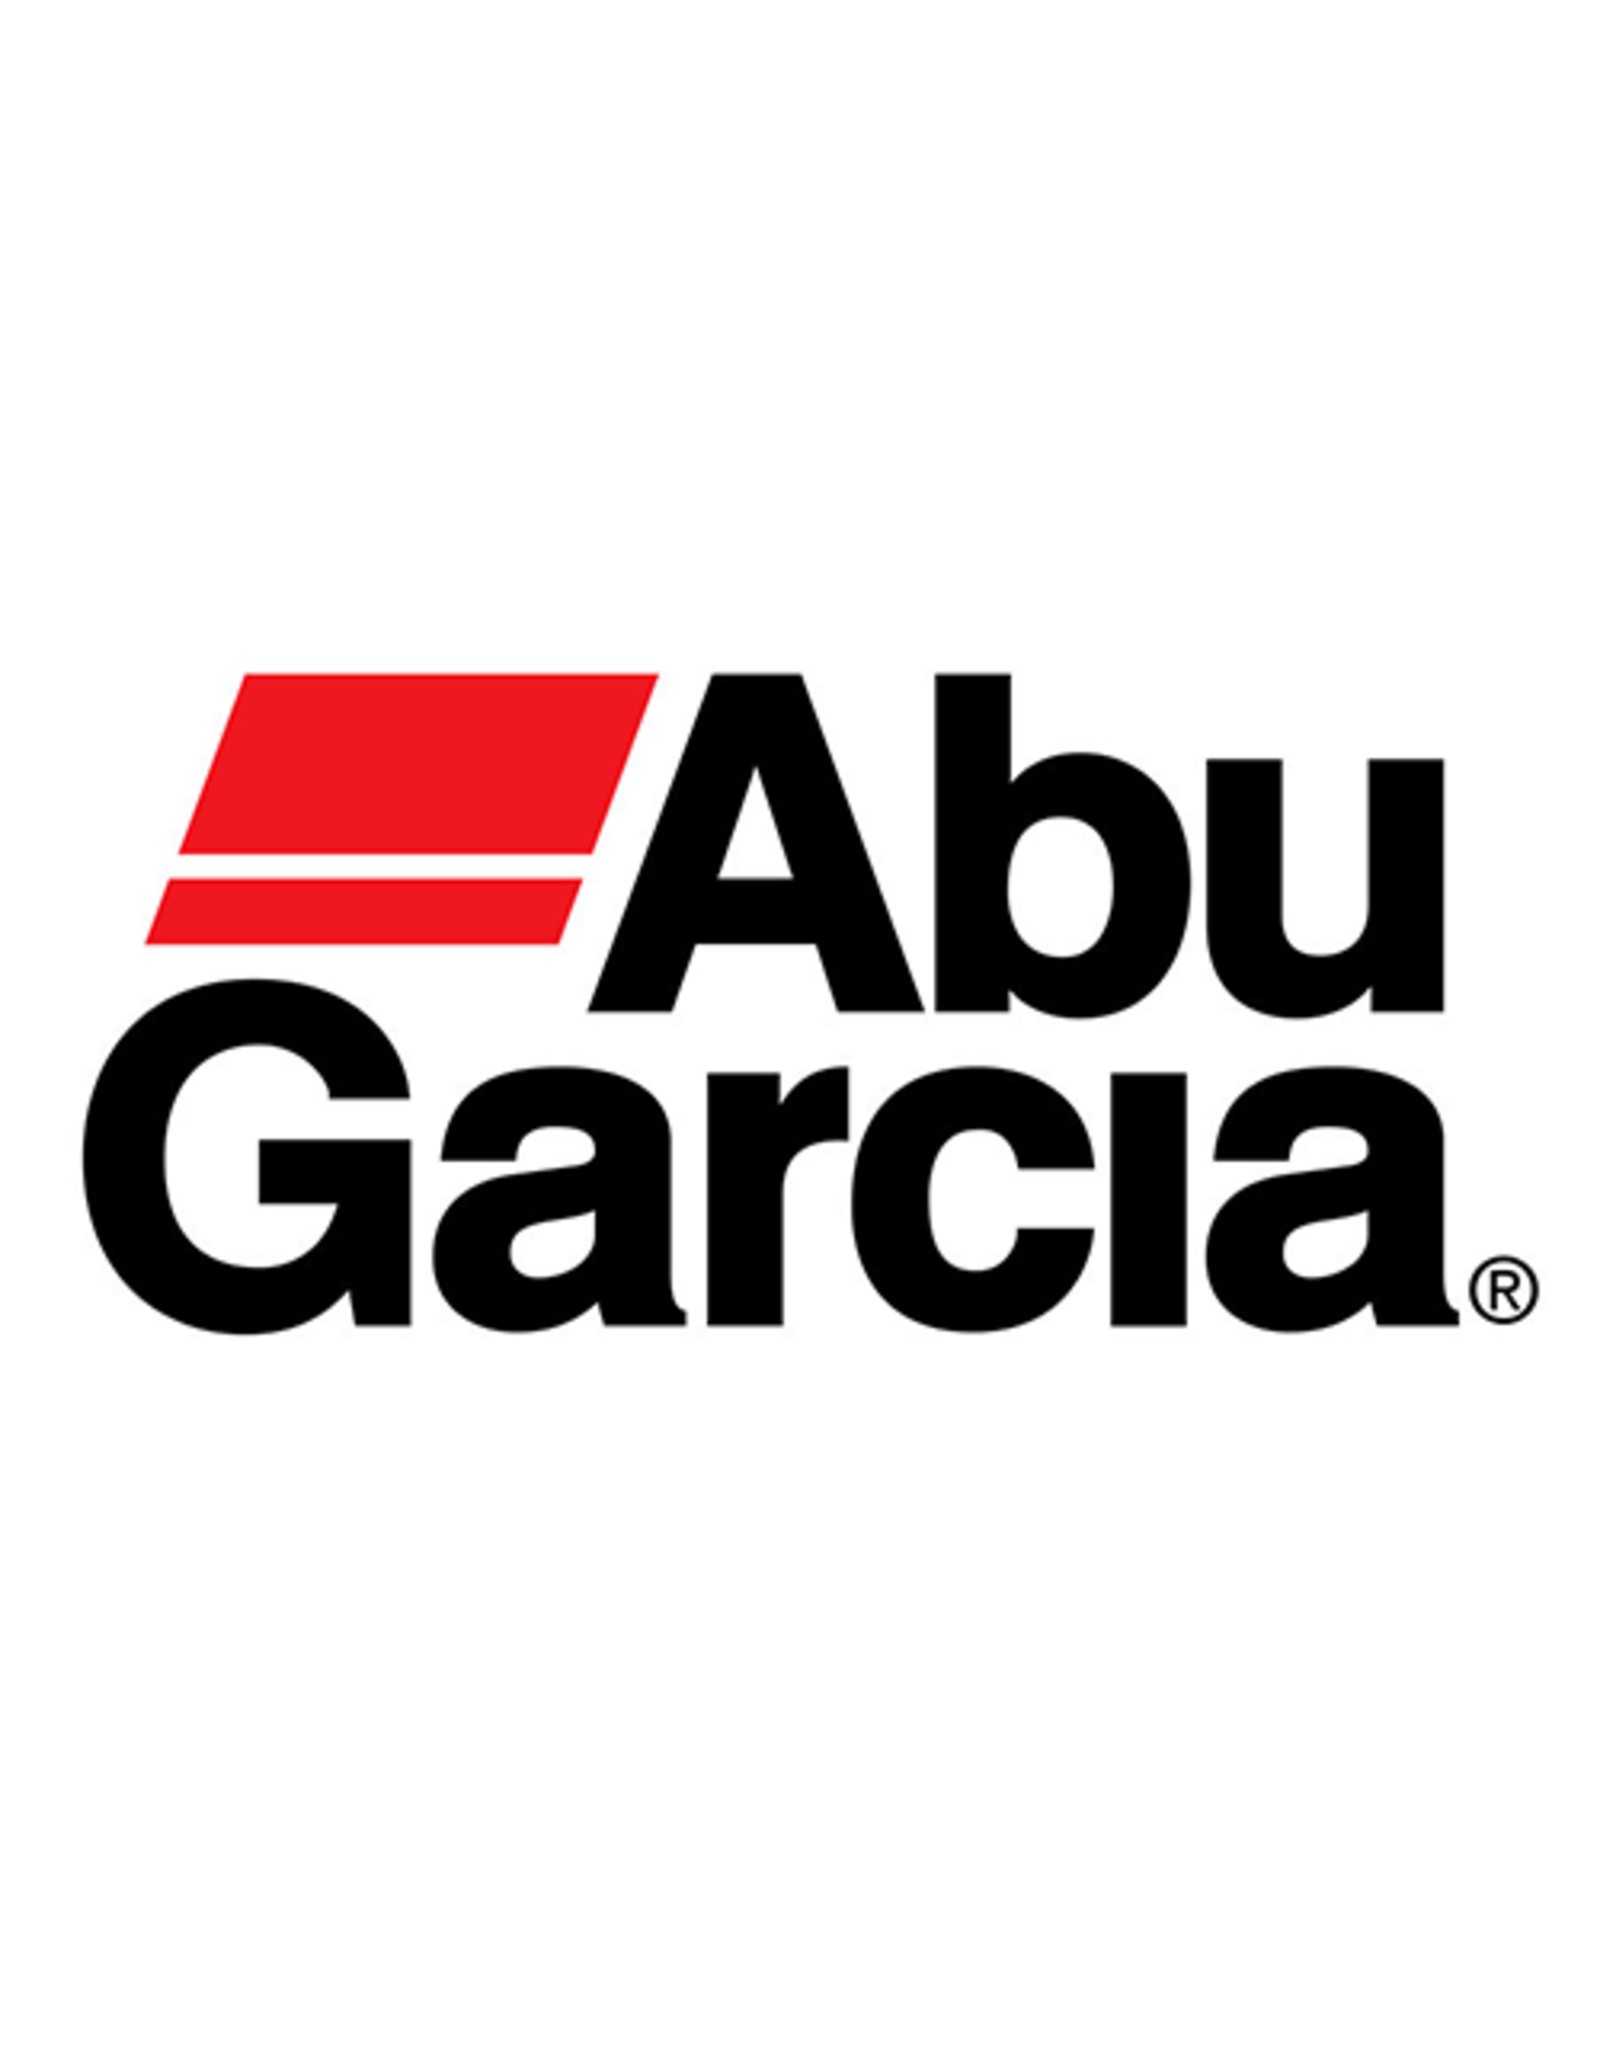 Abu Garcia 970821  SPOOL/NLA